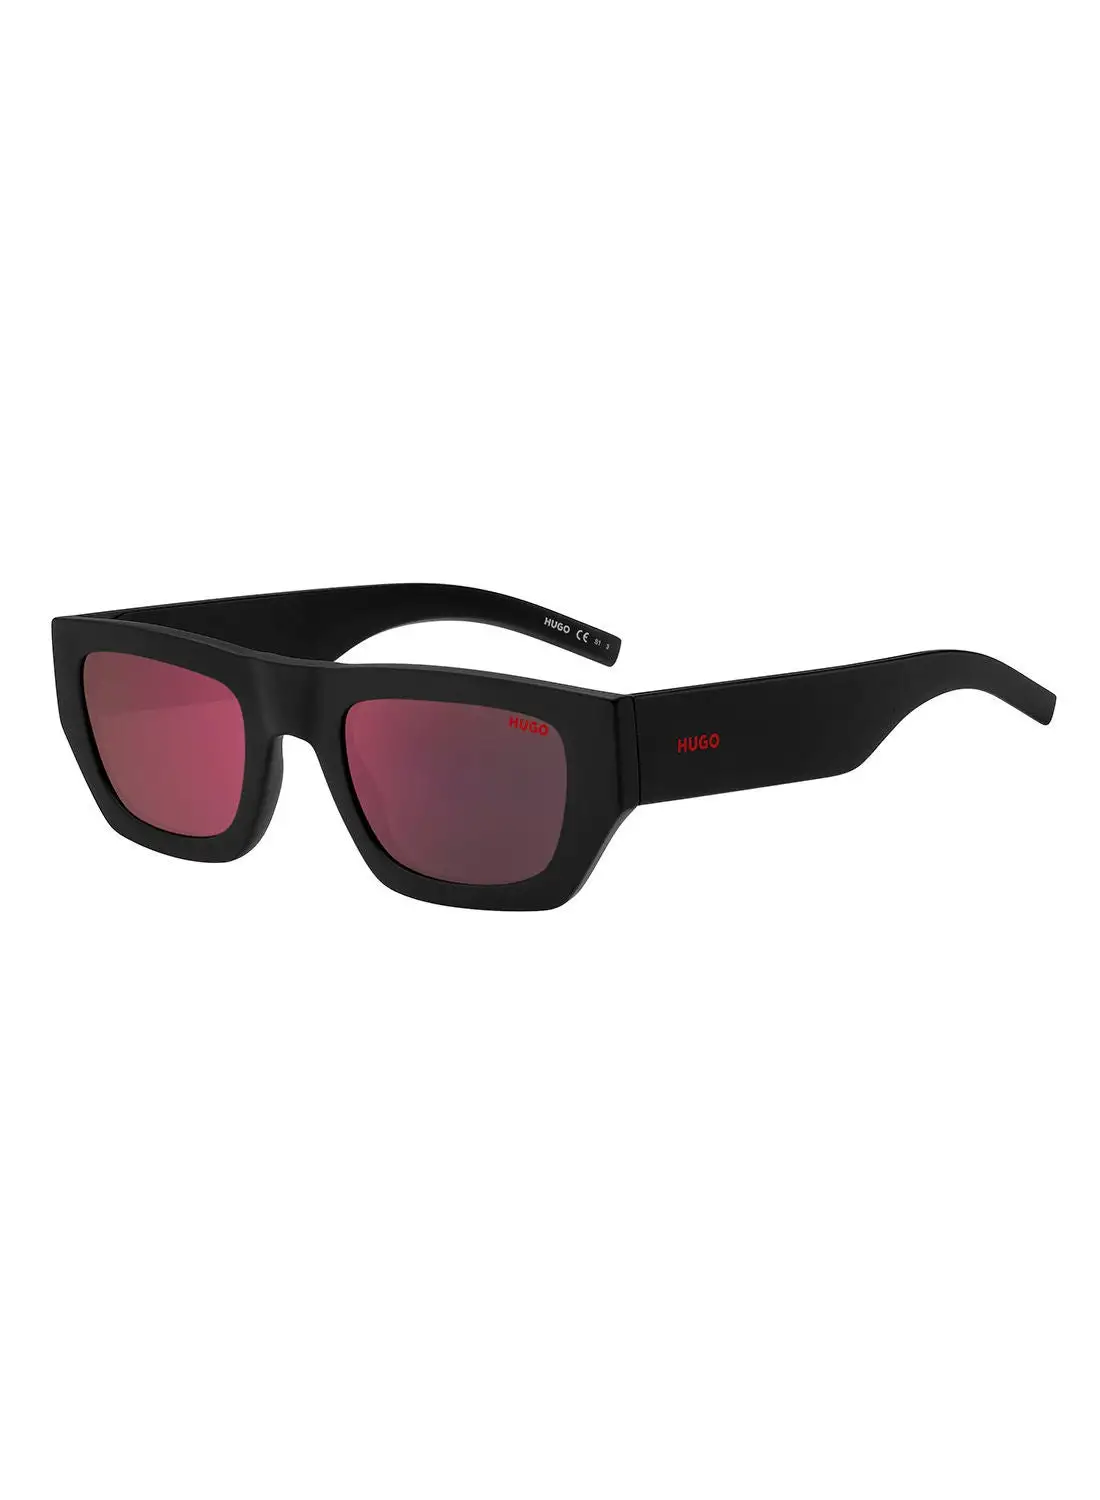 HUGO Men's UV Protection Sunglasses - Hg 1252/S Black 51 - Lens Size: 51 Mm